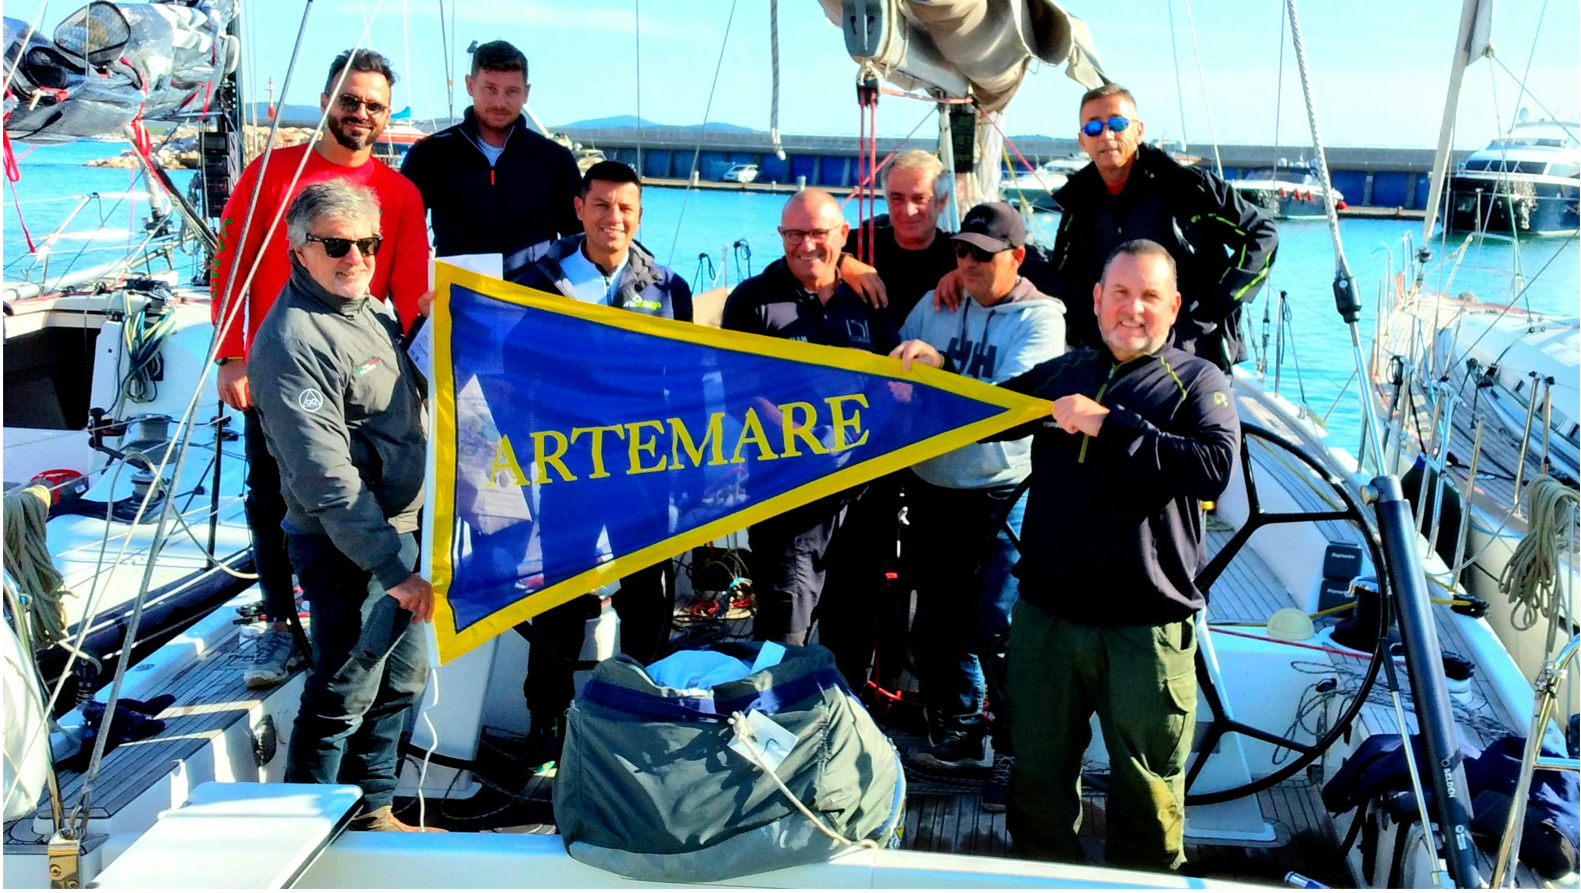 L'equipaggio dell'imbarcazione Bangherang con il guidone di Artemare Club